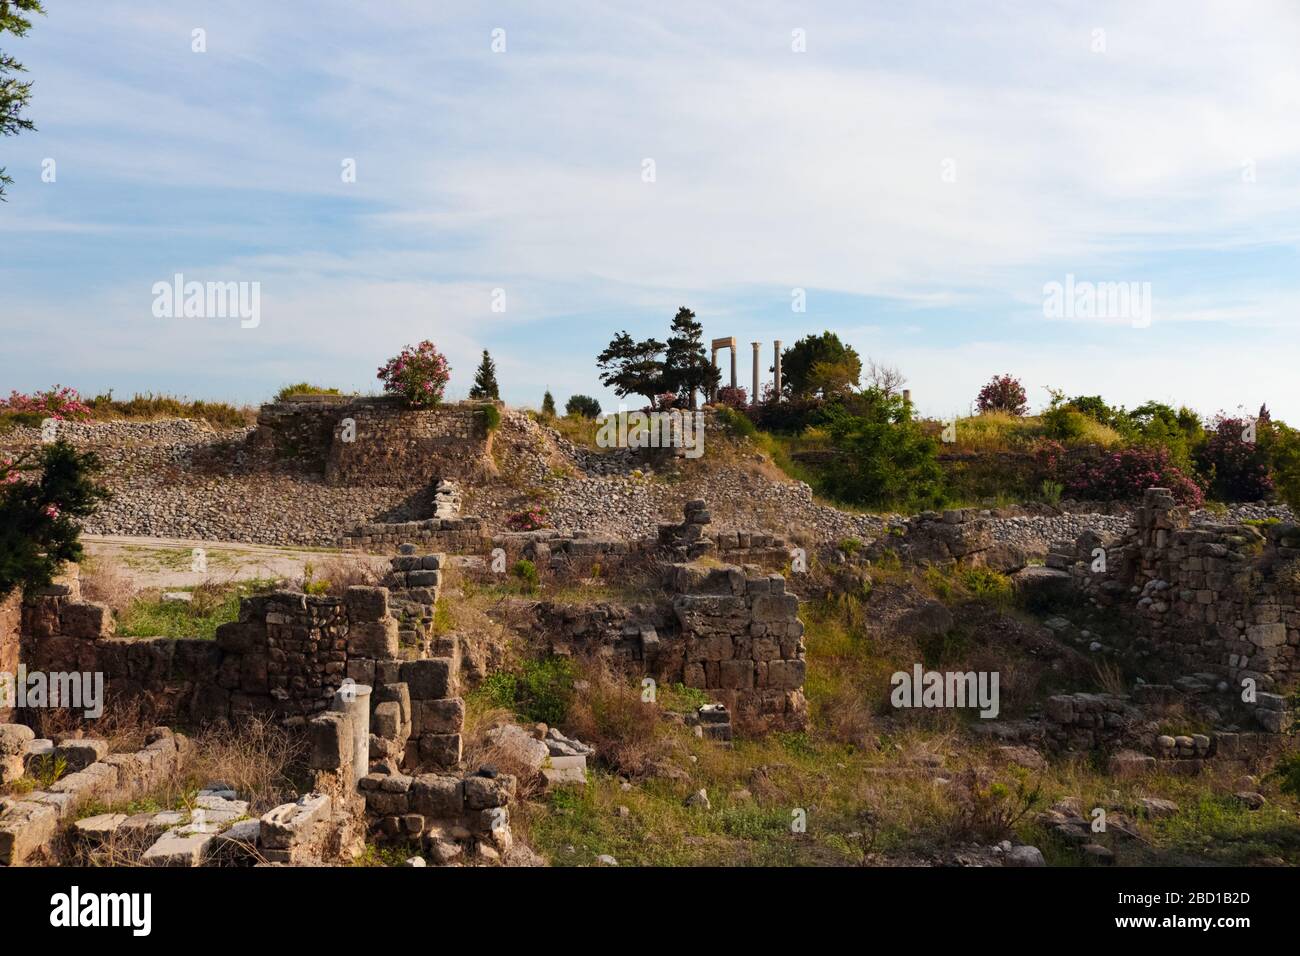 Ruines archéologiques de structures romaines construites à Byblos, Liban. Banque D'Images